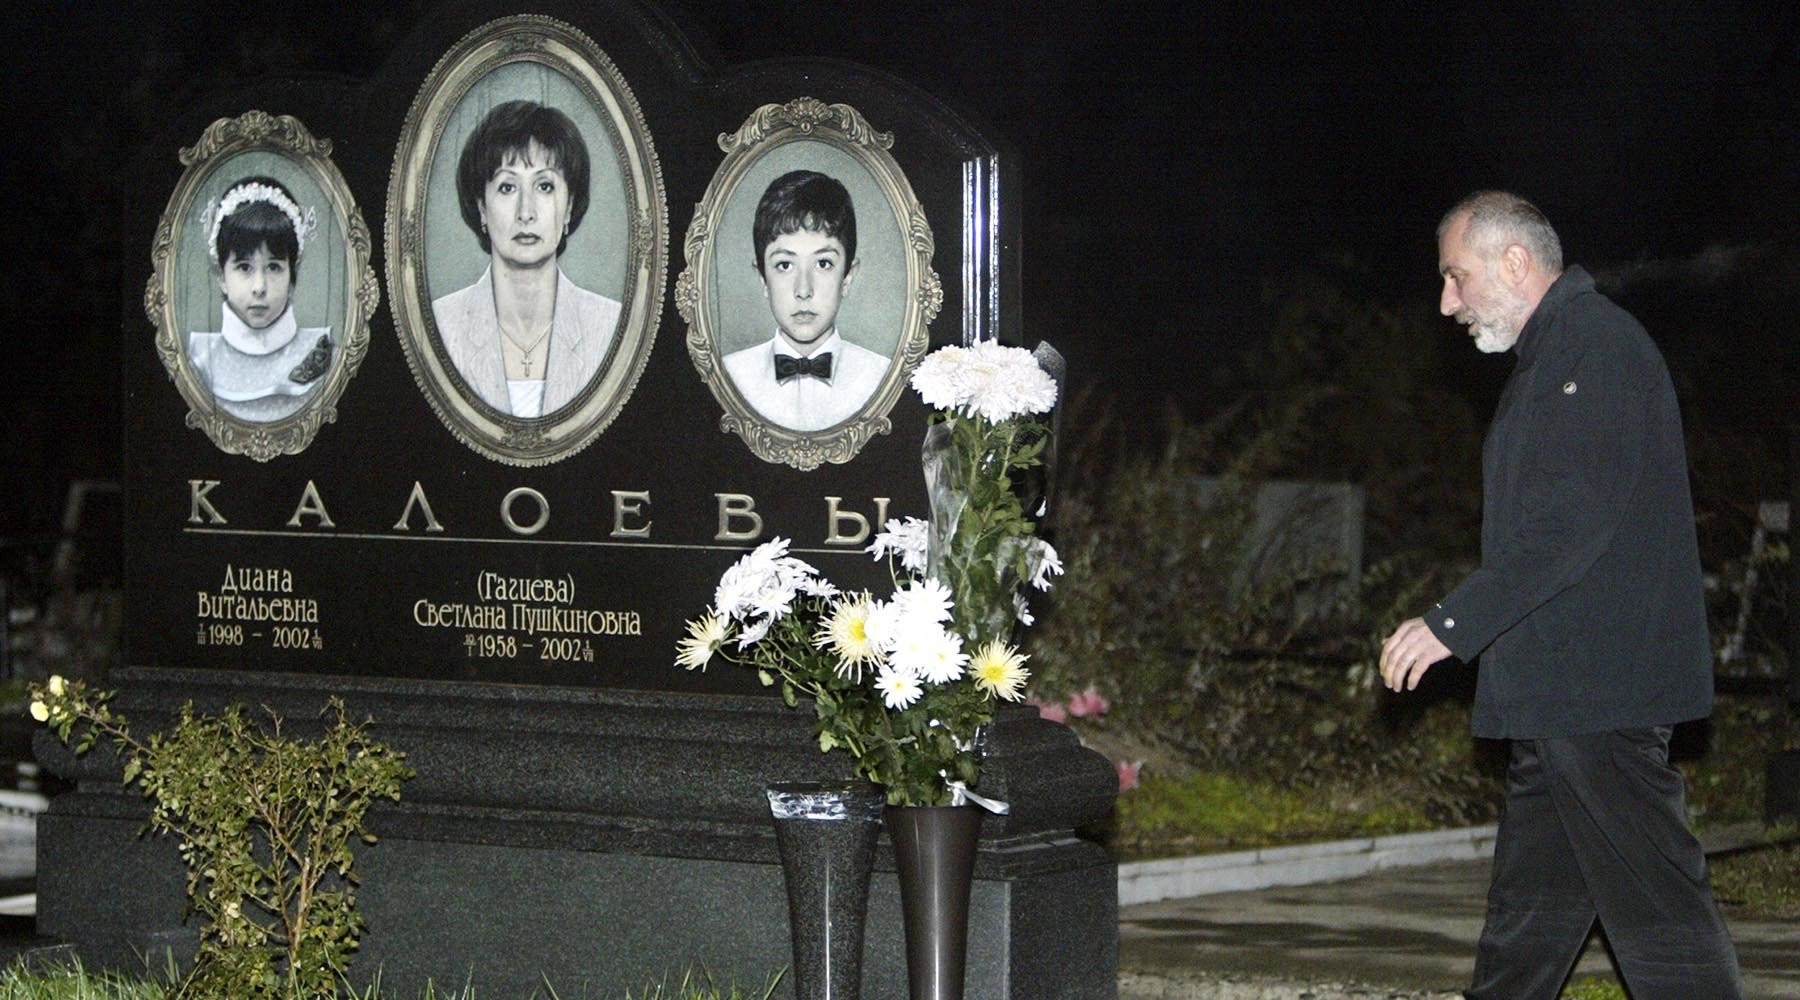 30 июля 2002. Авиакатастрофа 2002 над Боденским озером Калоев.